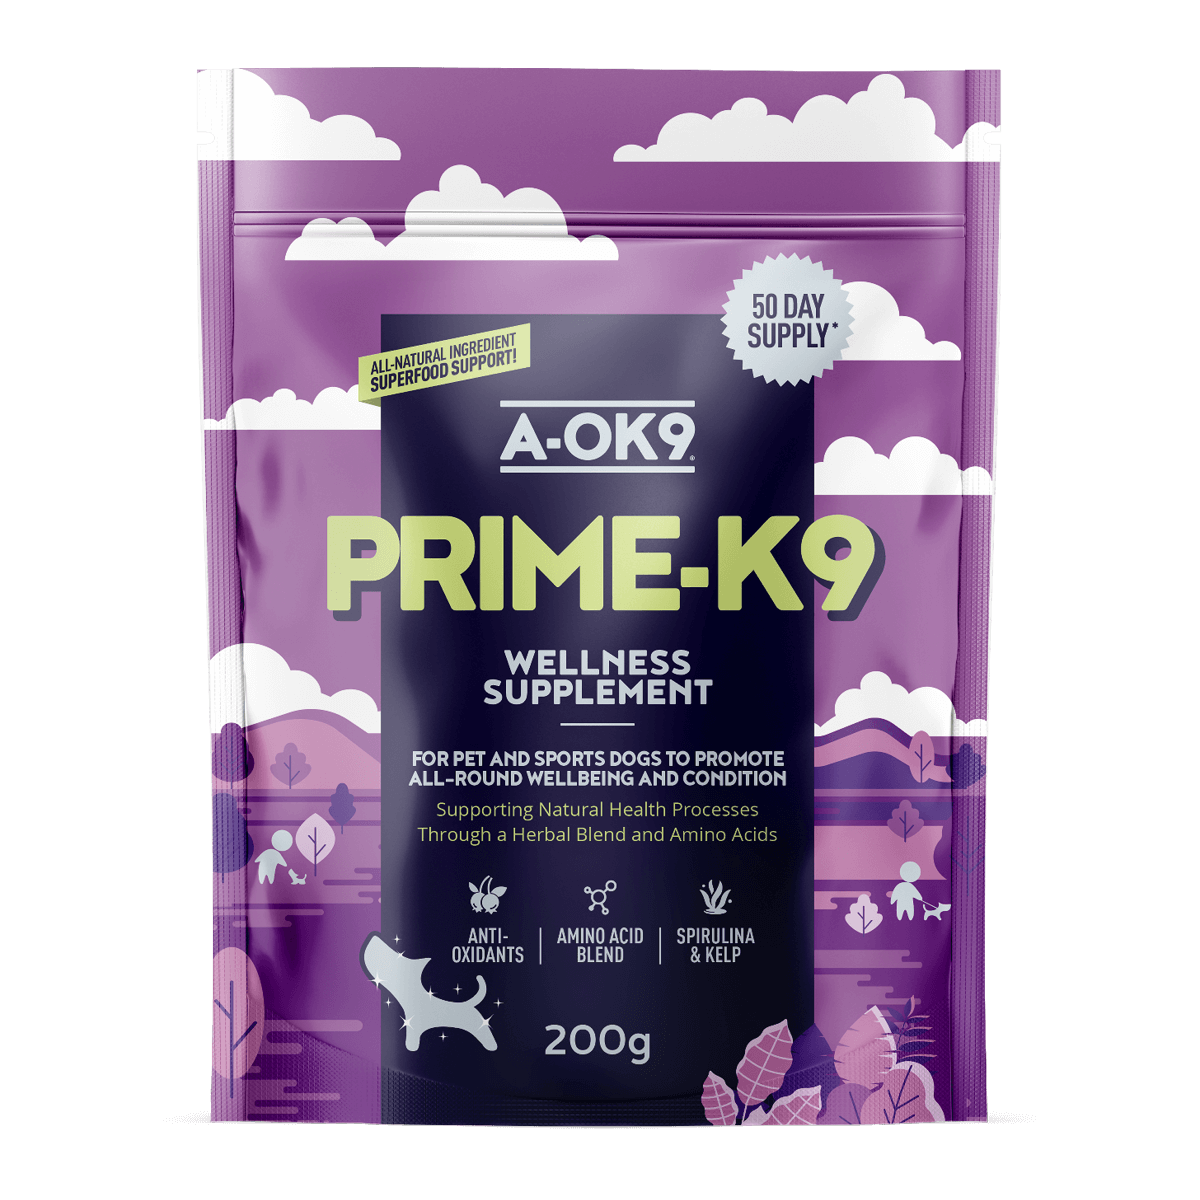 Prime-K9